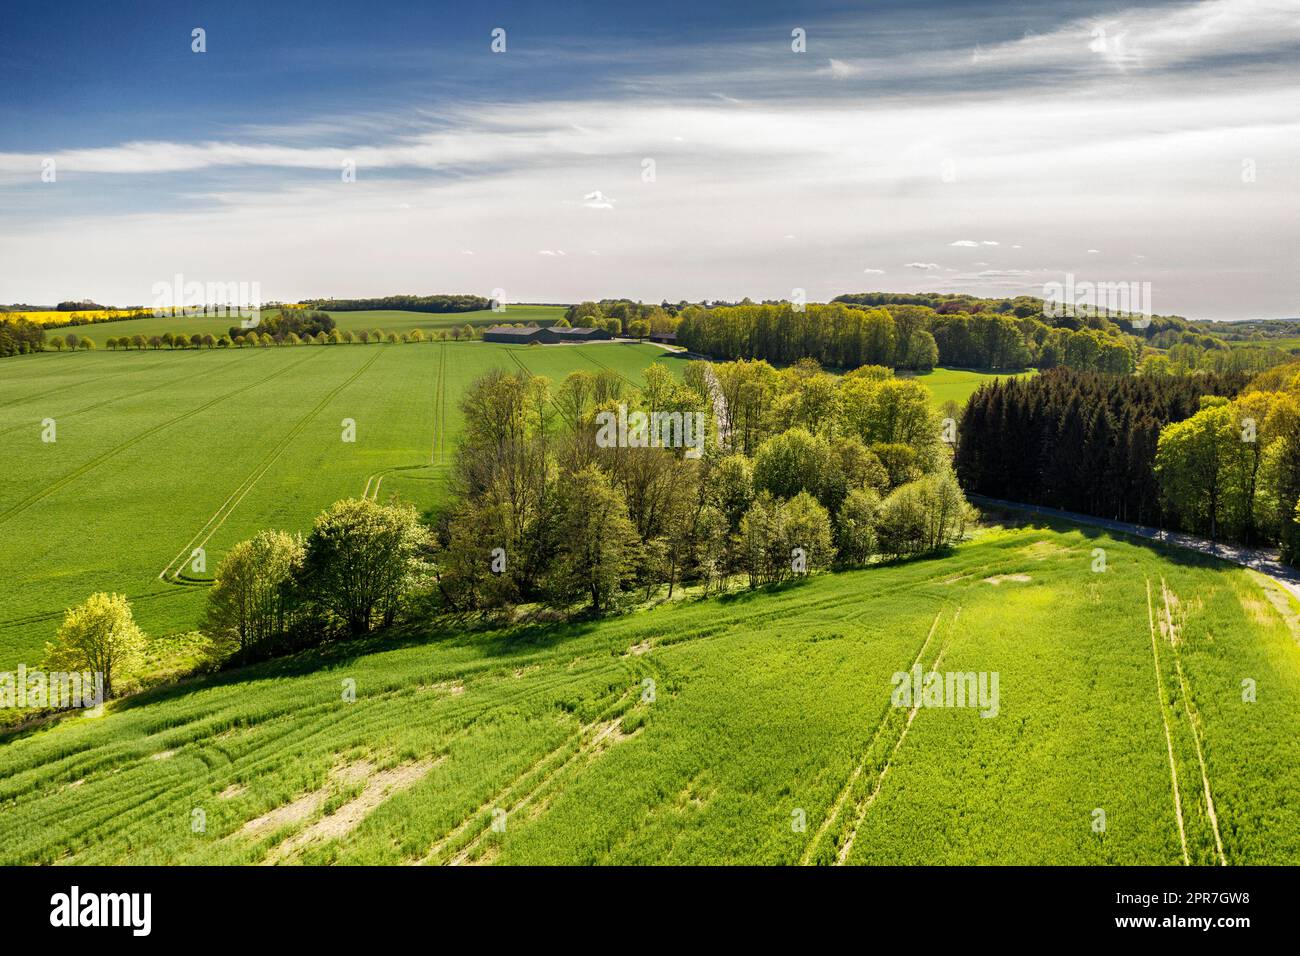 Üppig grüne Landschaft von Jütland, Dänemark mit viel Platz. Nachhaltiger, biologischer Bauernhof, ländliche Landschaft mit ruhigem Gras, Büschen und Bäumen. Friedliche Wälder mit beruhigender, beruhigender Panoramaaussicht Stockfoto